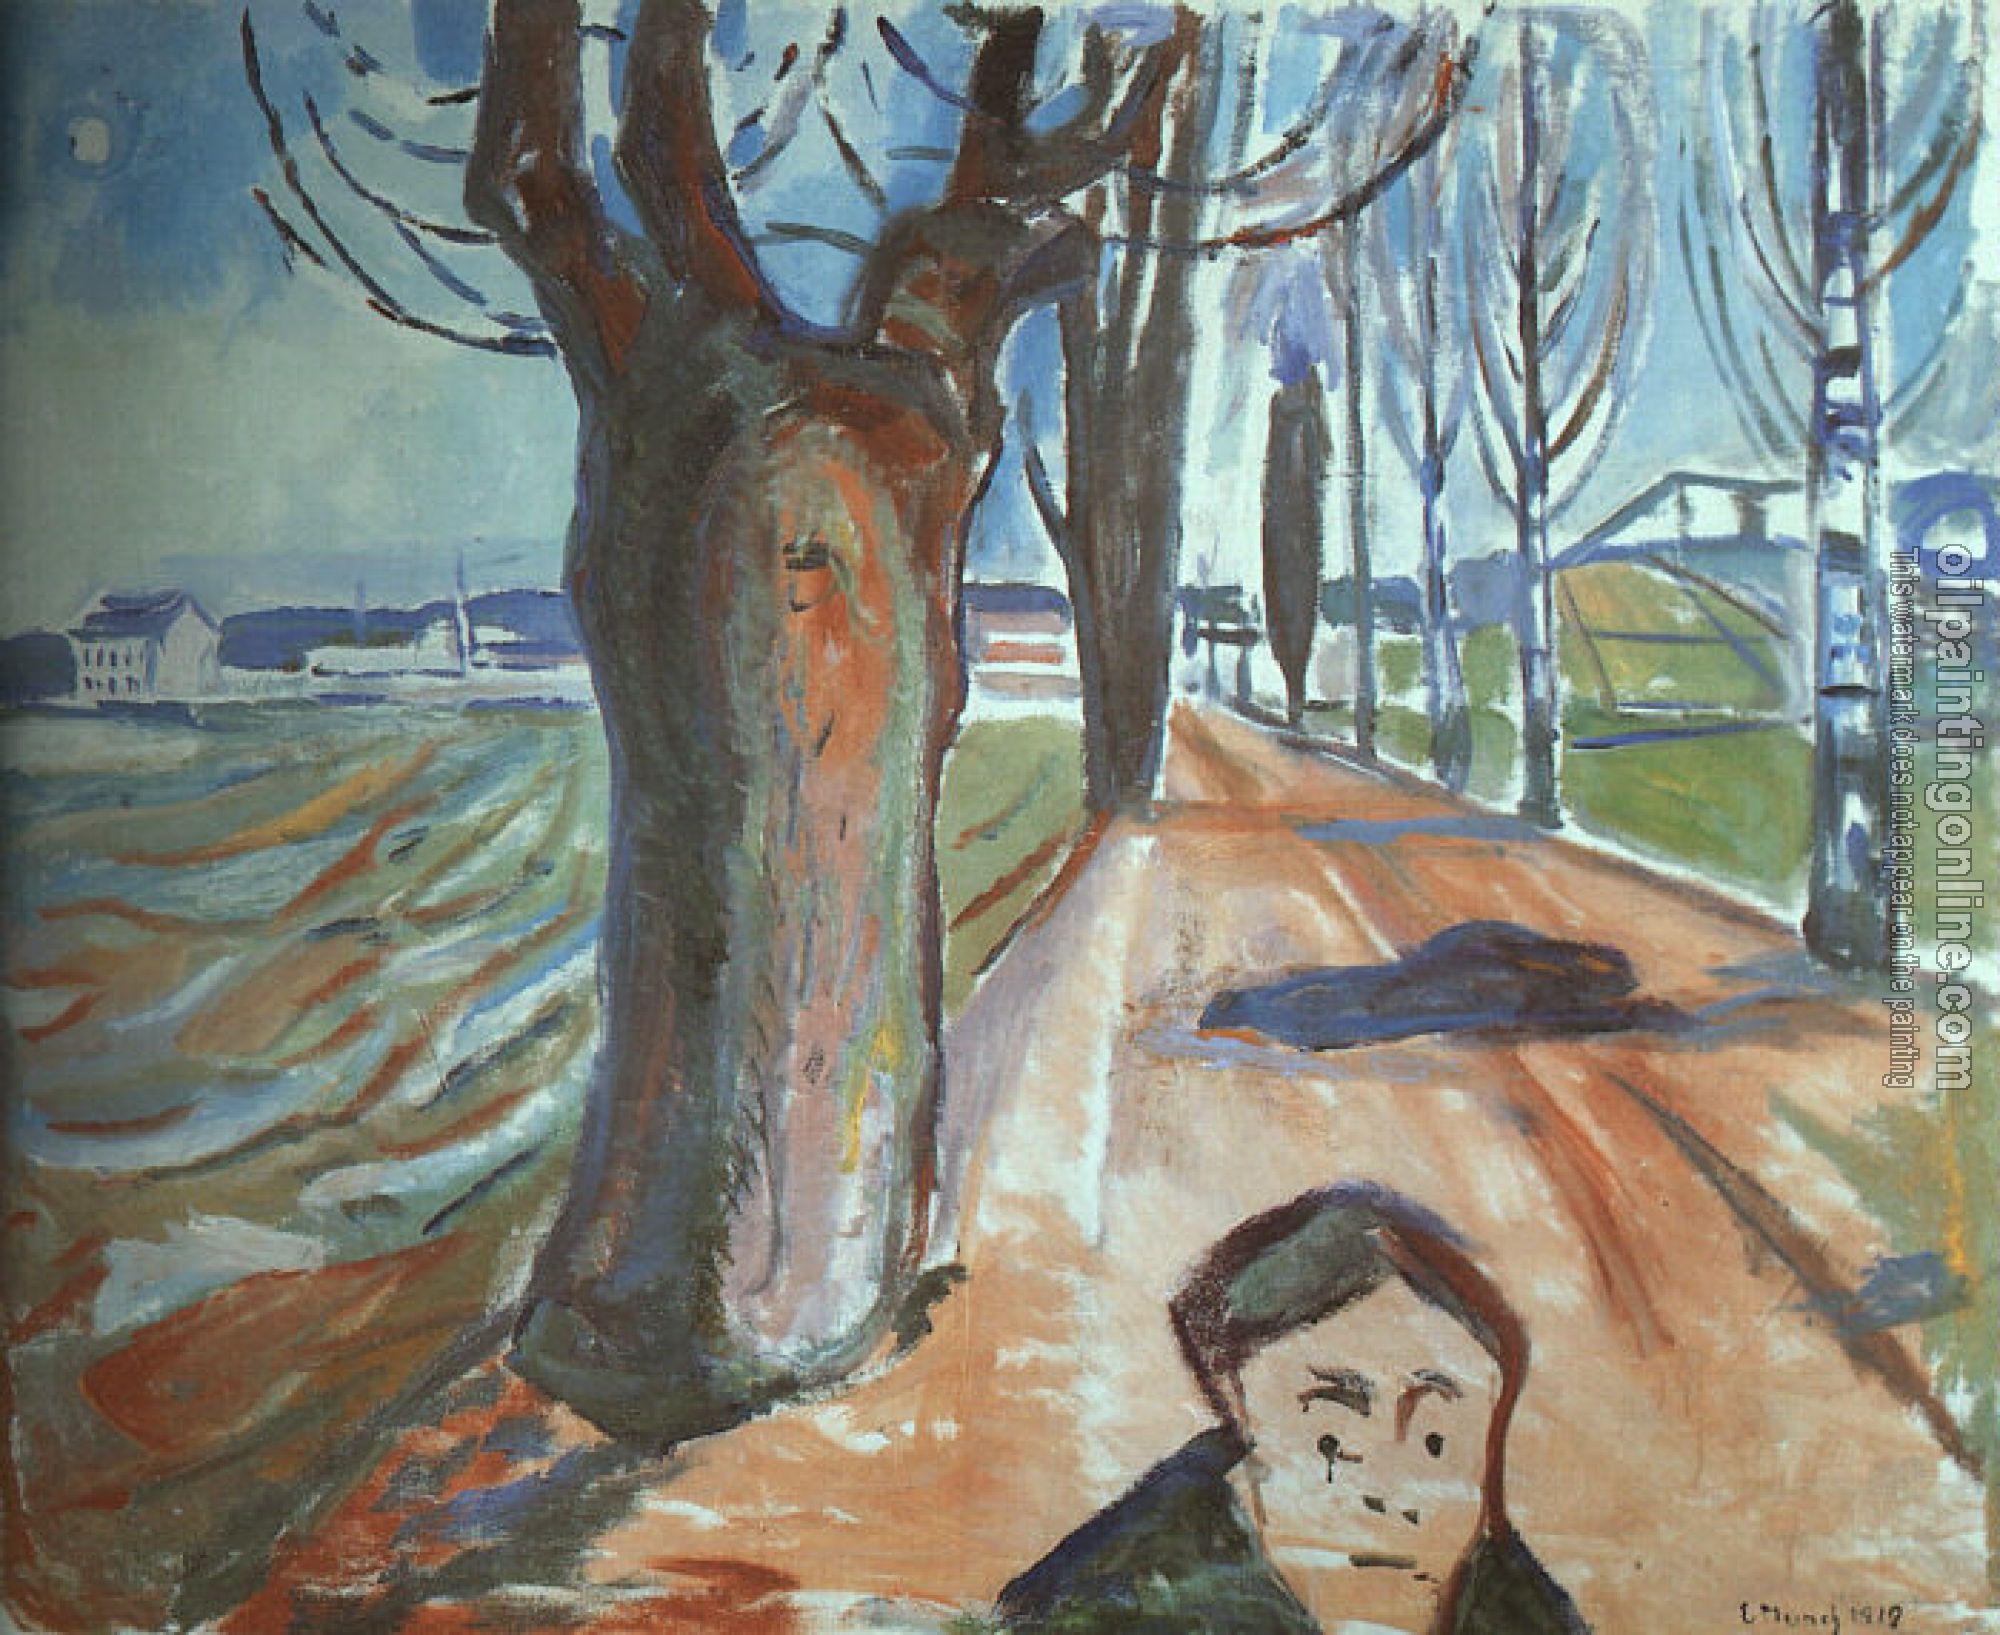 Munch, Edvard - The Murderer on the Lane